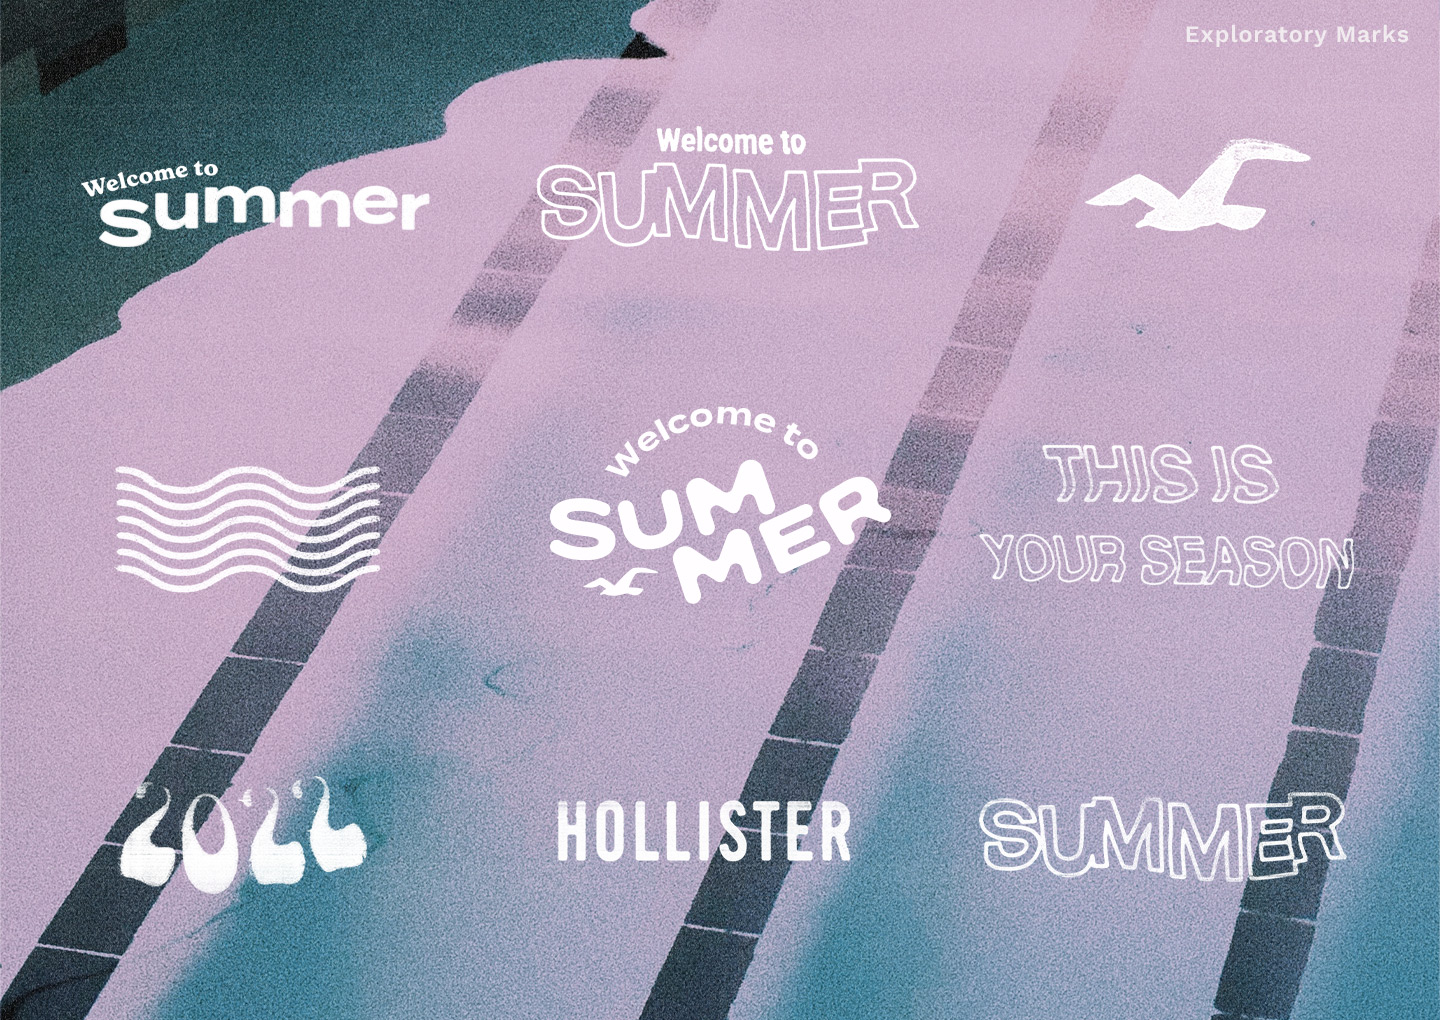 Hollister Summer 2022